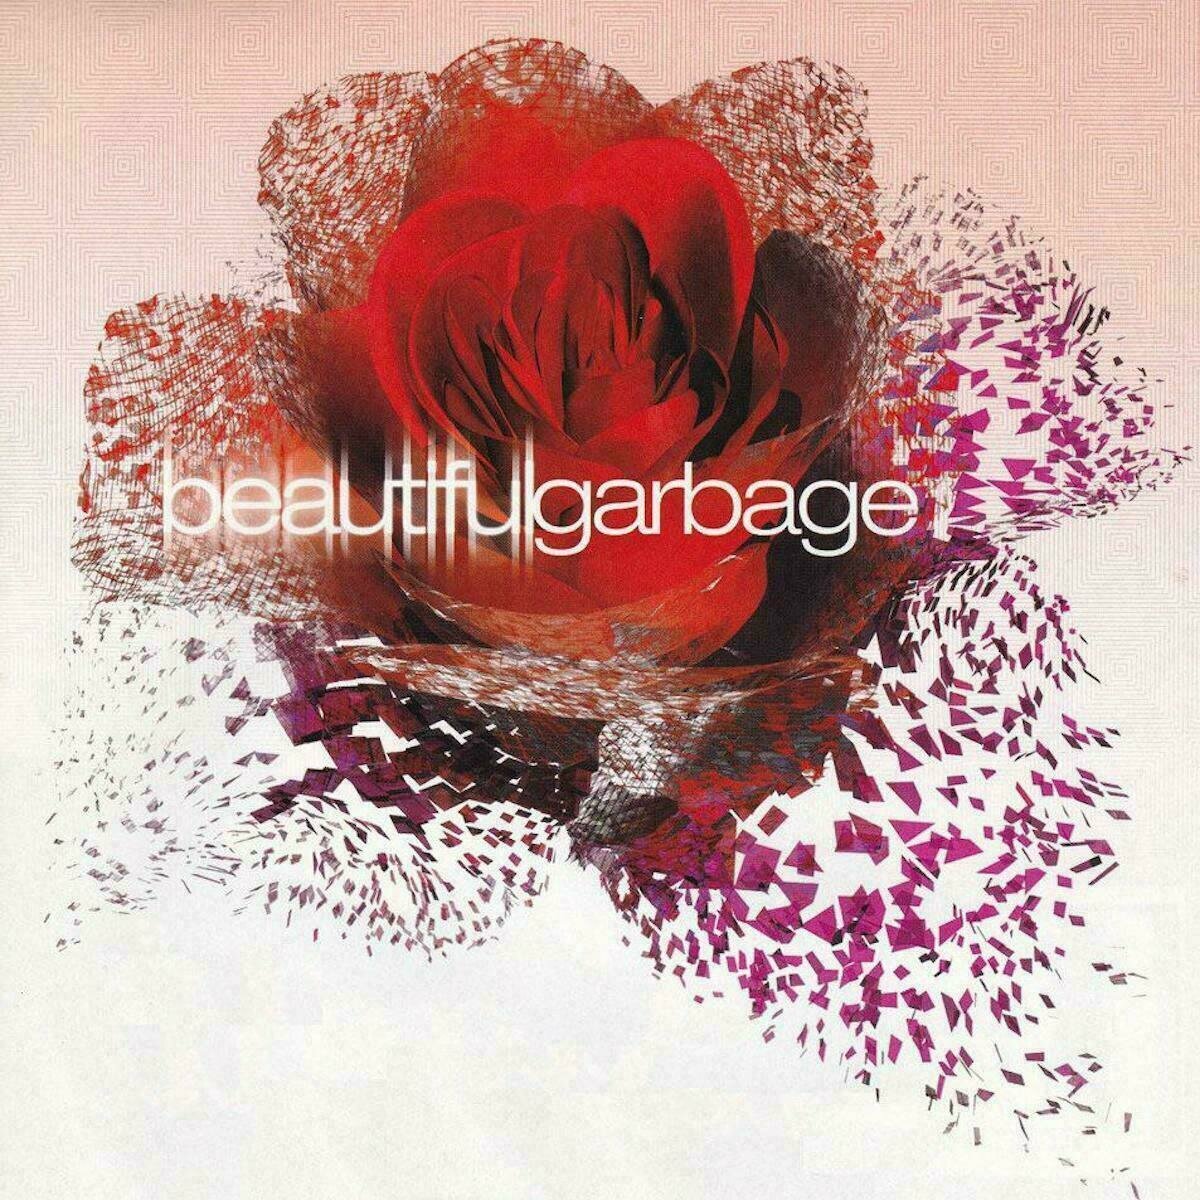 Hanglemez Garbage - Beautiful Garbage (2021 Remaster) (Colour Vinyl) (2 LP)